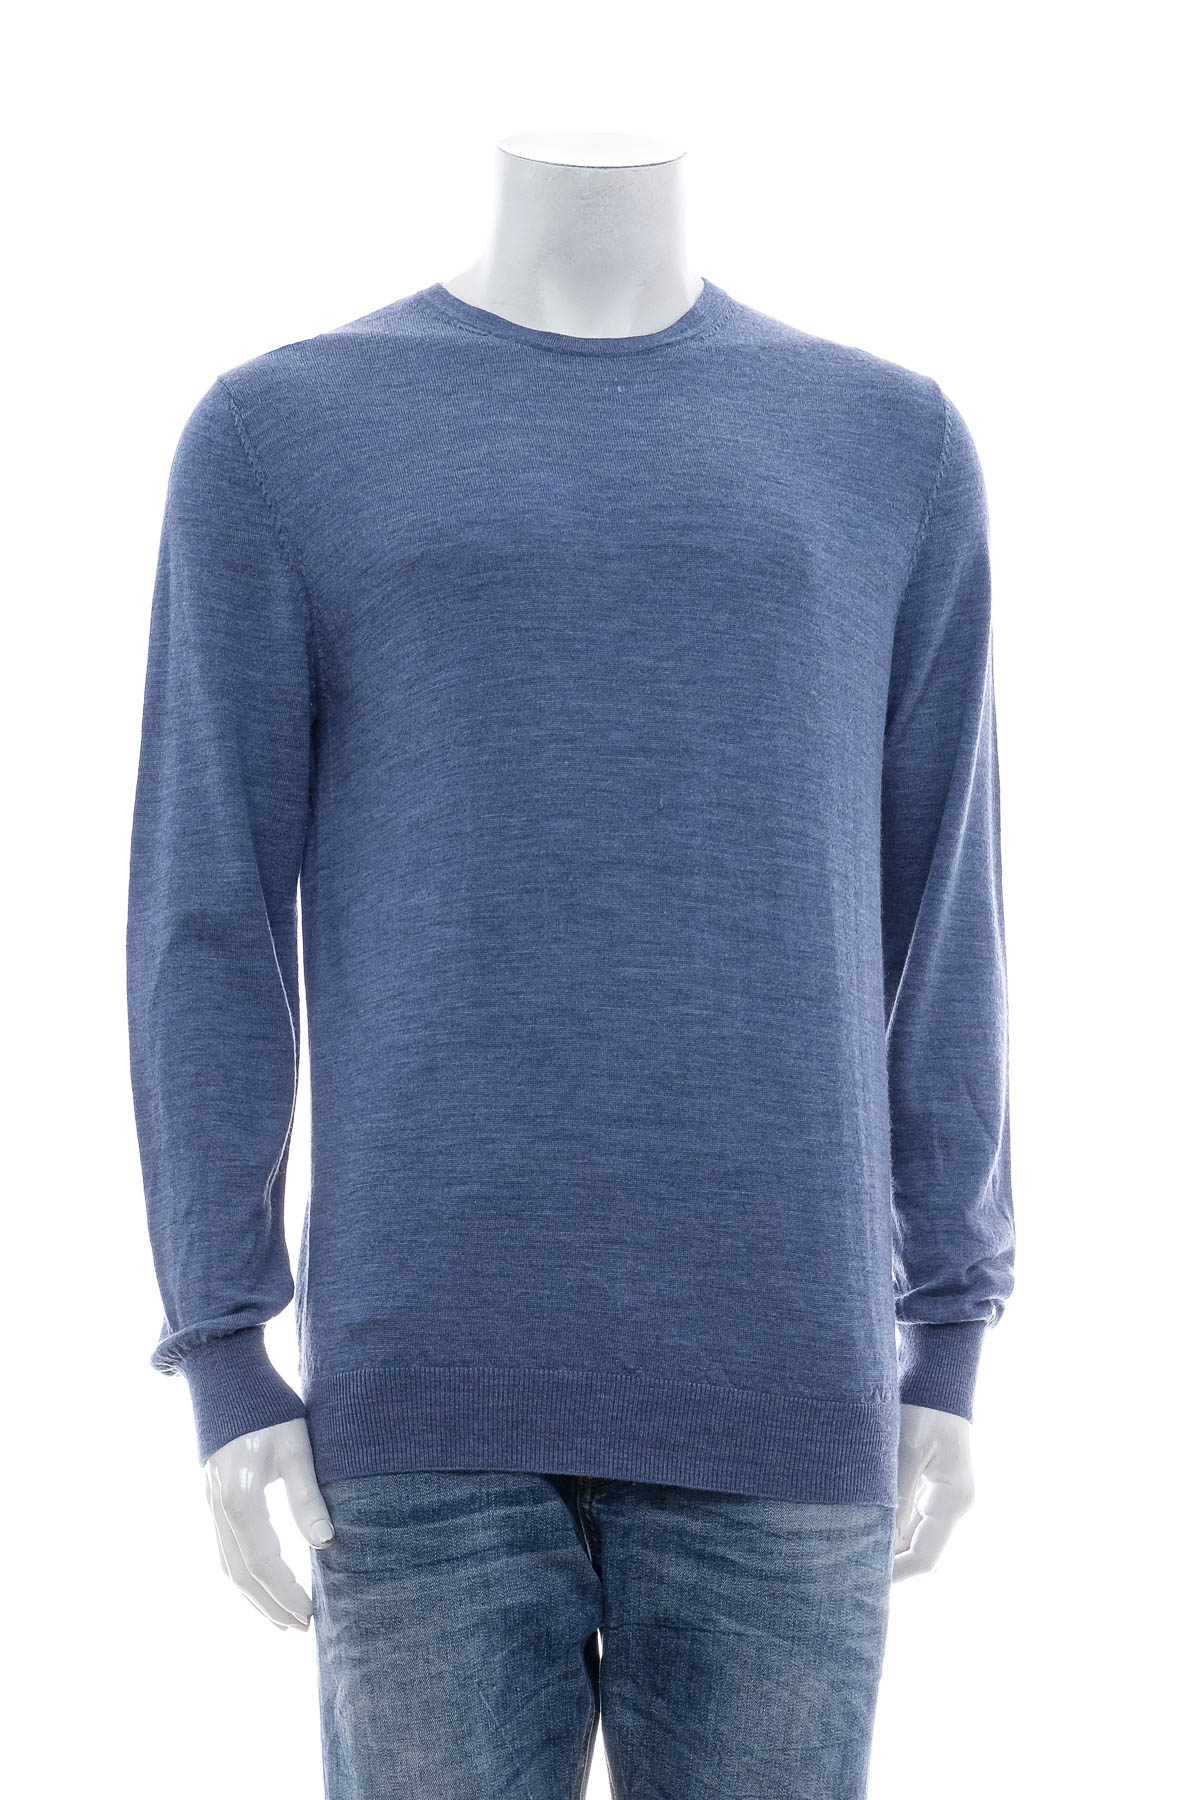 Men's sweater - Dressmann - 0